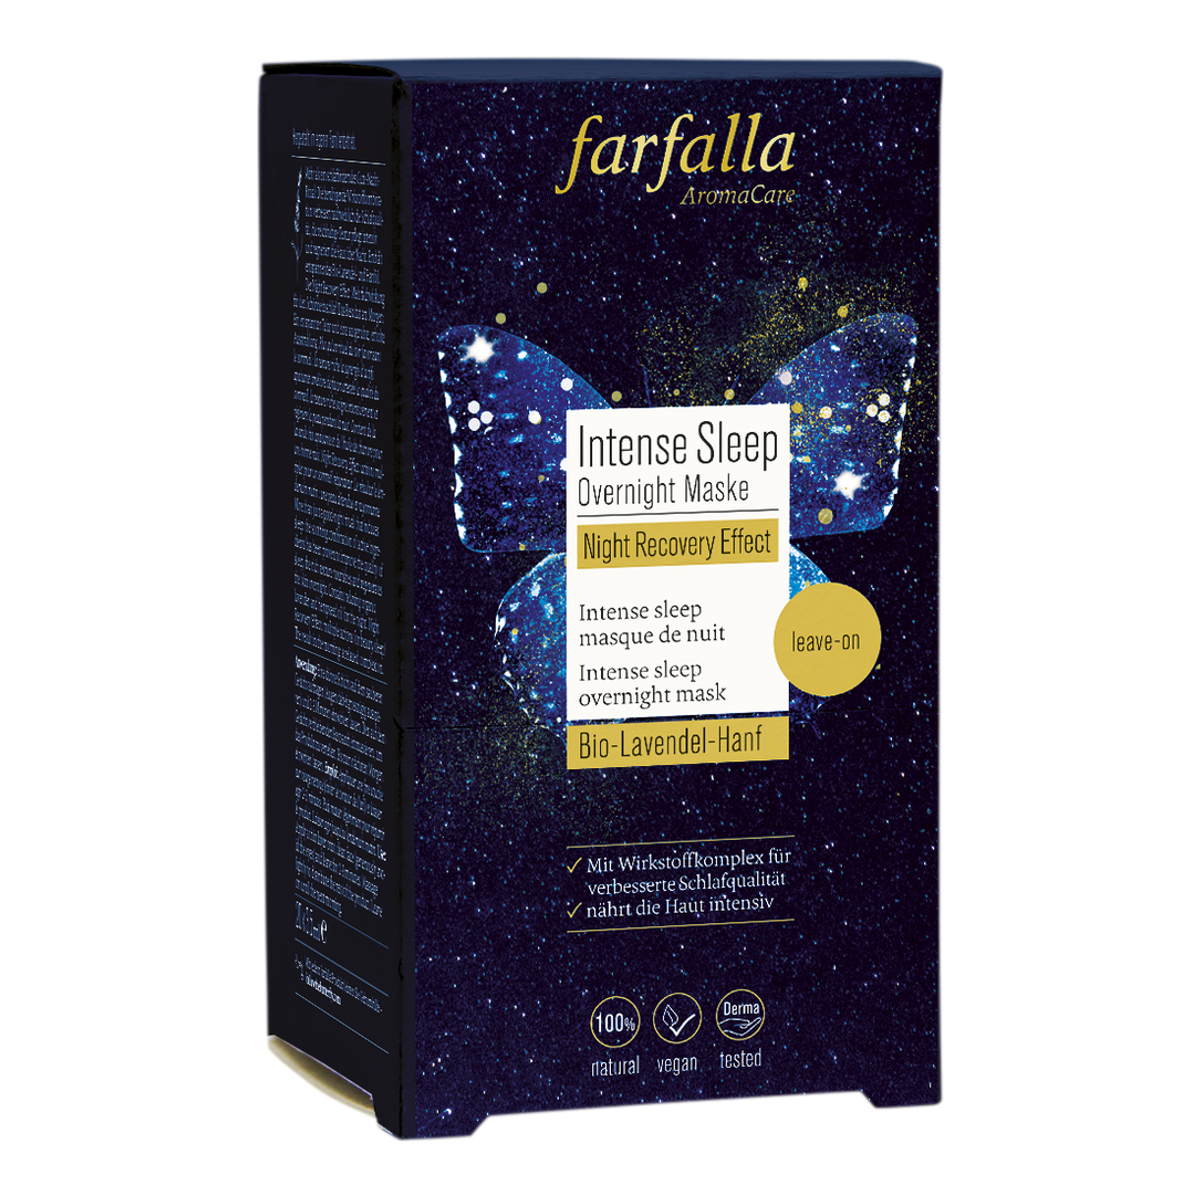 Farfalla Intense Sleep Overnight Maske, Night Recovery Effect